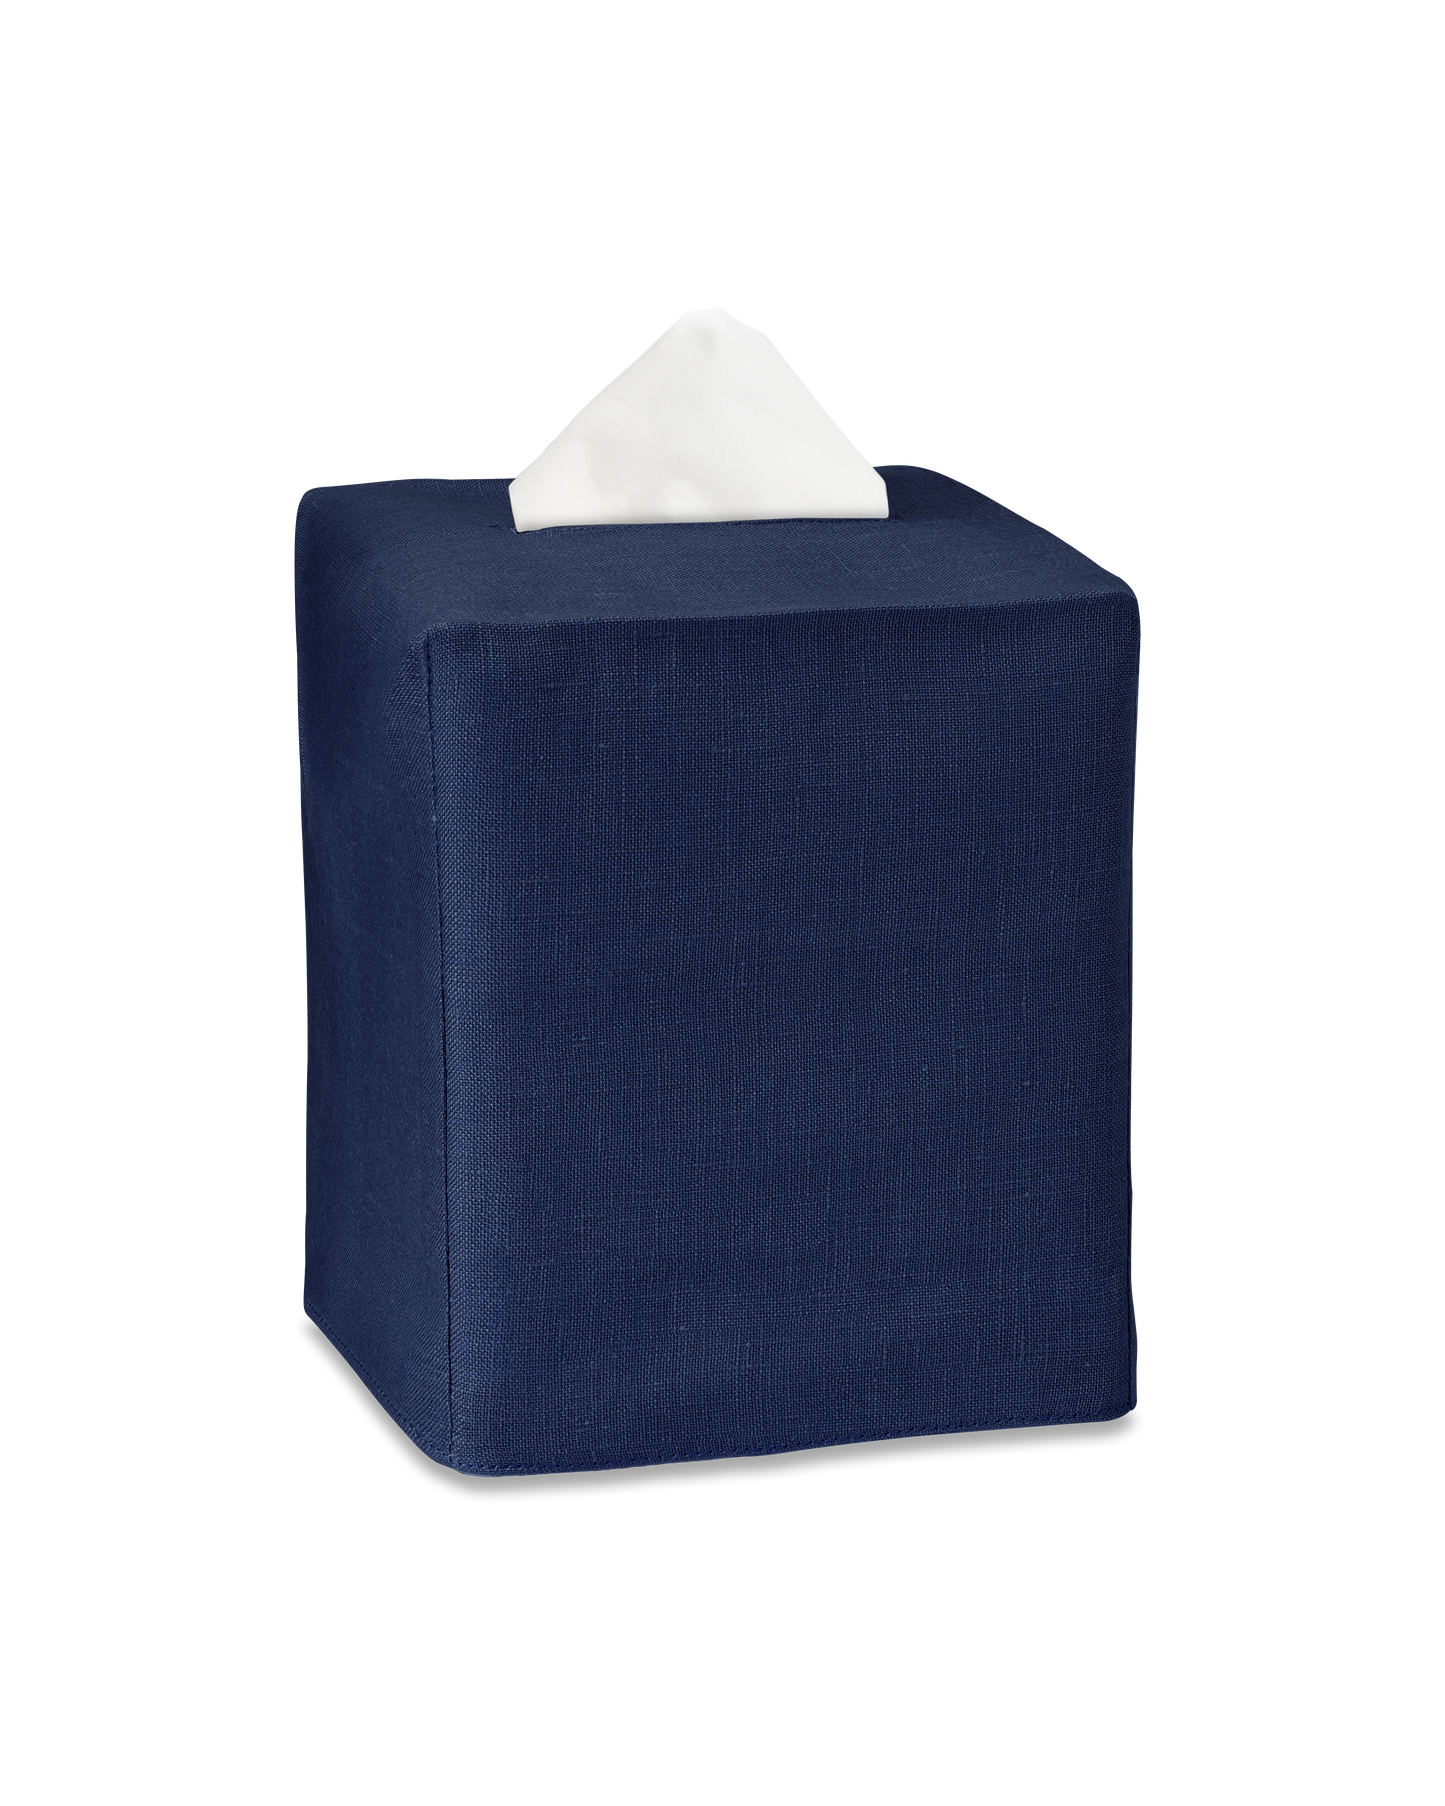 A navy linen tissue box cover